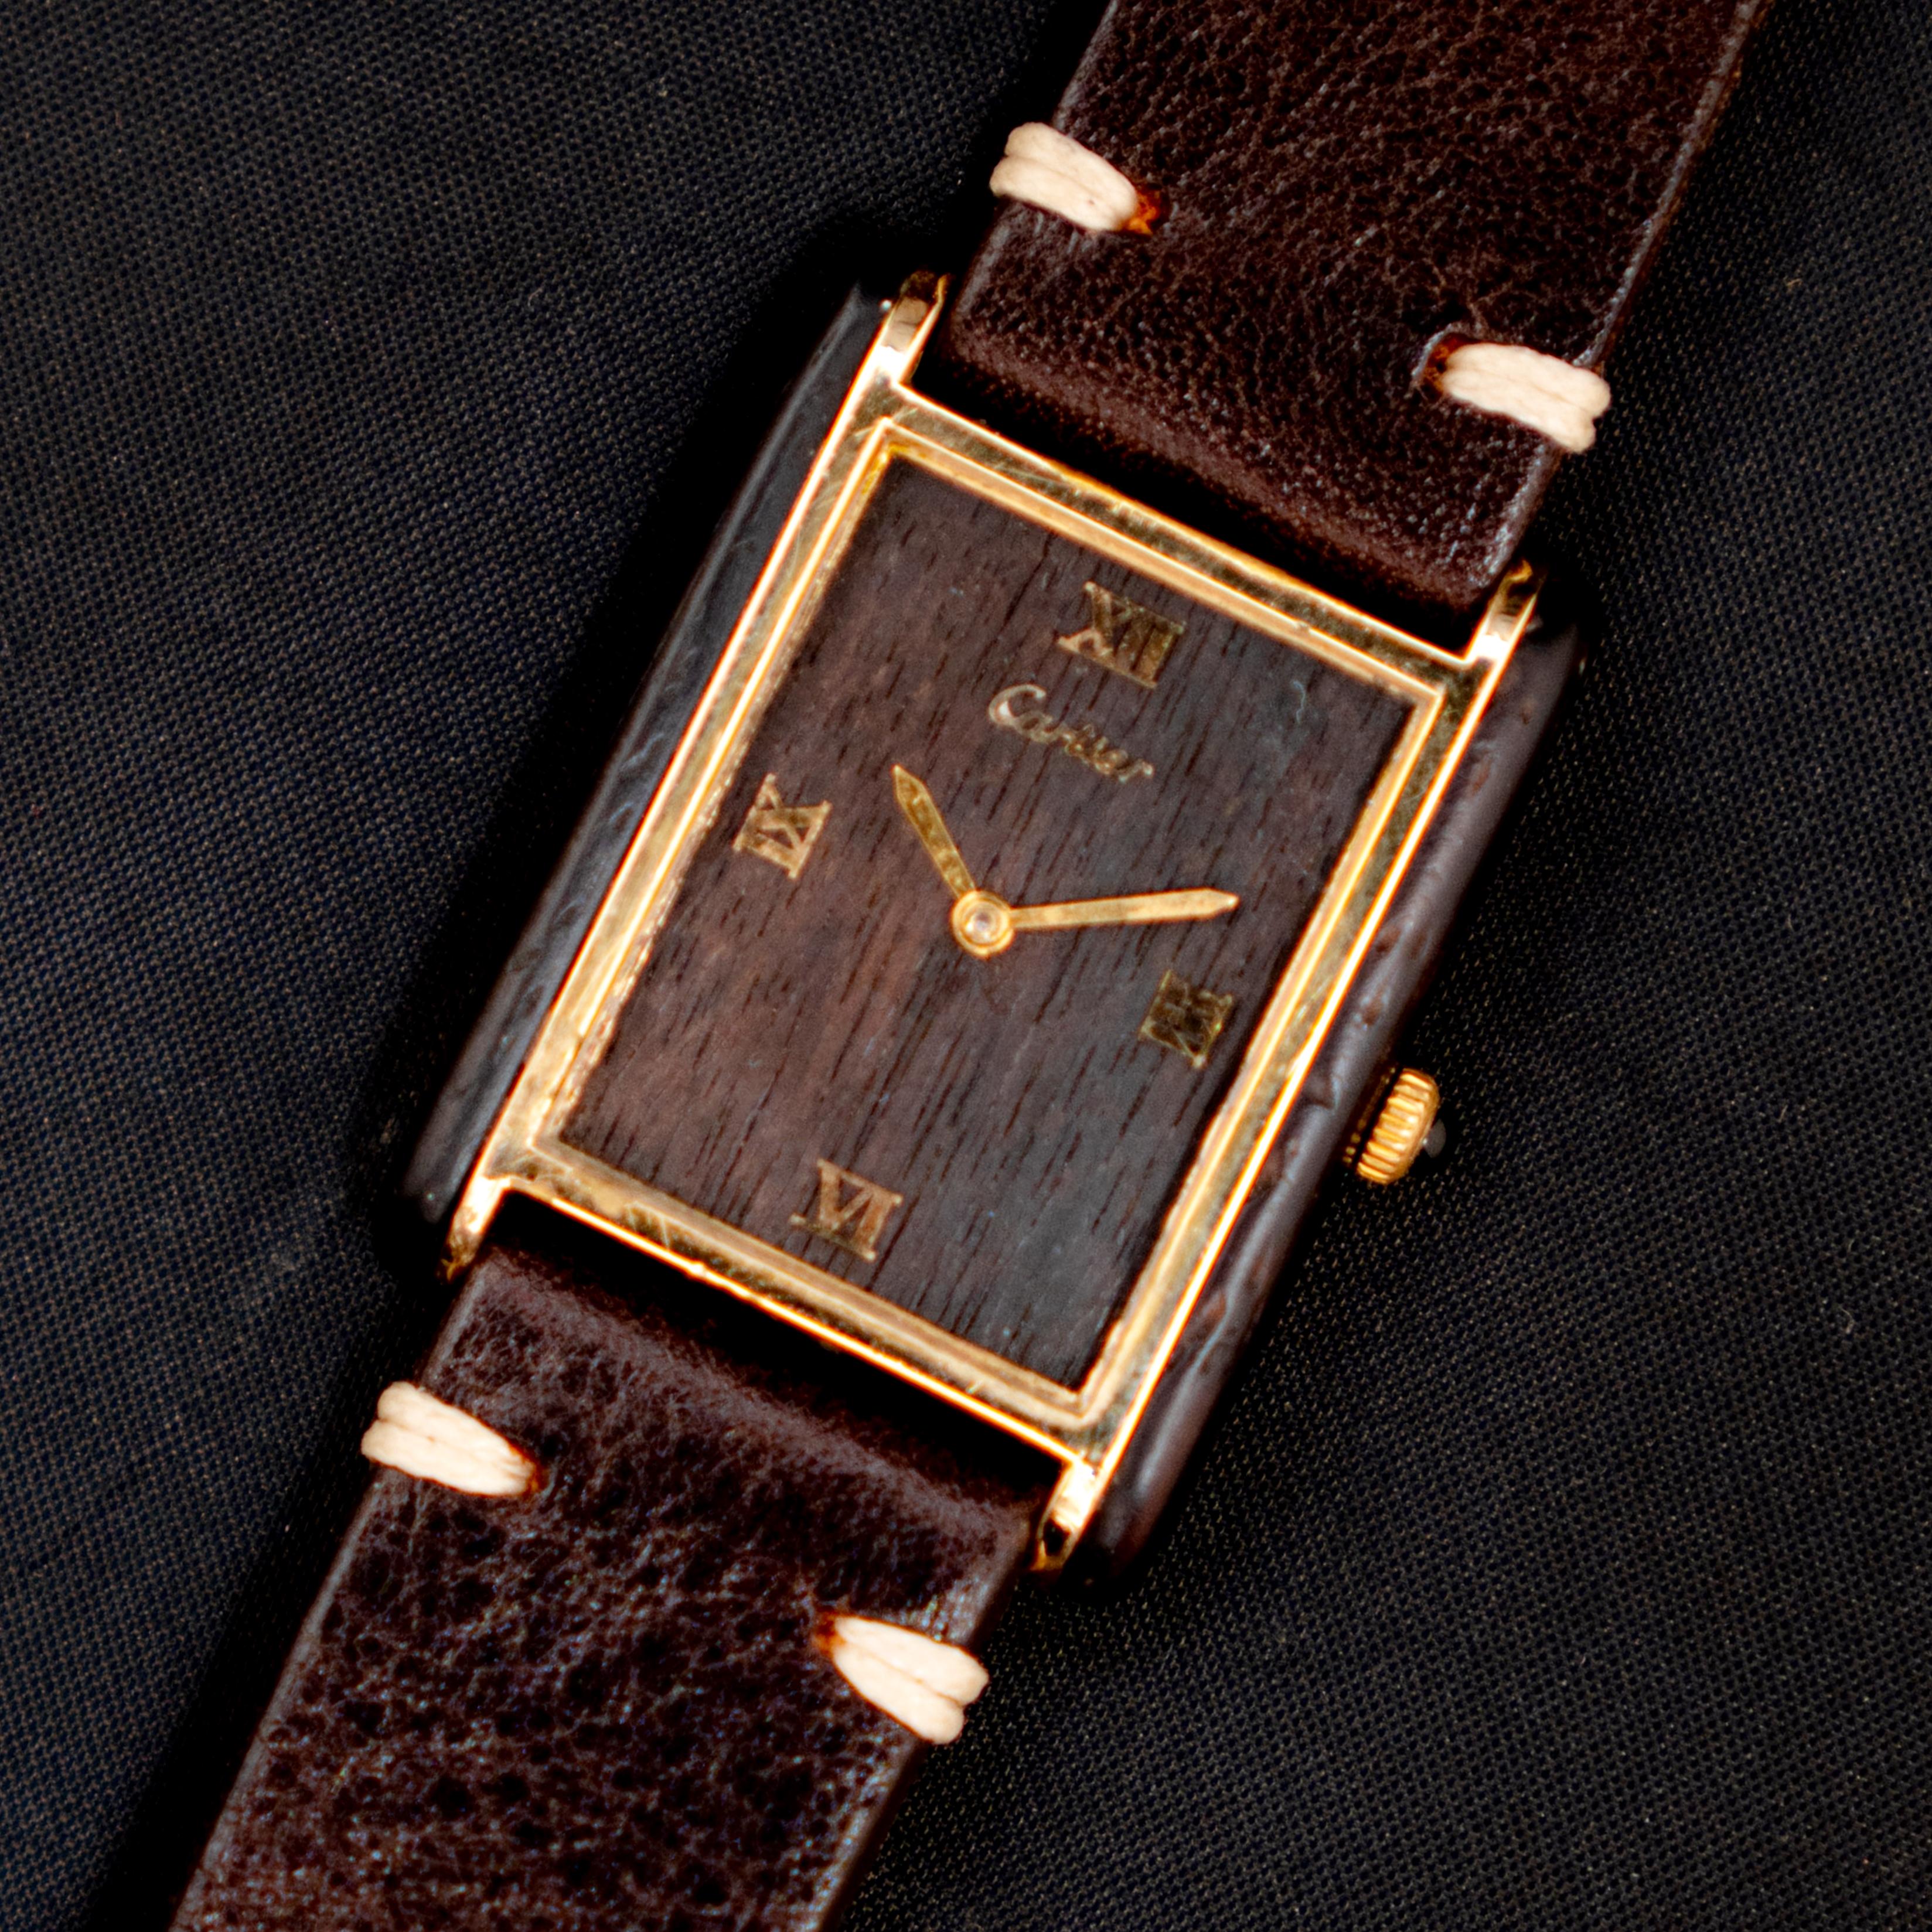 Marque : Cartier
Modèle : Réservoir
Année : 1975 - 1976
Référence : OT1894

Cartier a lancé les montres Must De Cartier Tank au milieu des années 1970. Ces montres ont été méticuleusement fabriquées à partir d'un bois de rose brésilien rare, connu